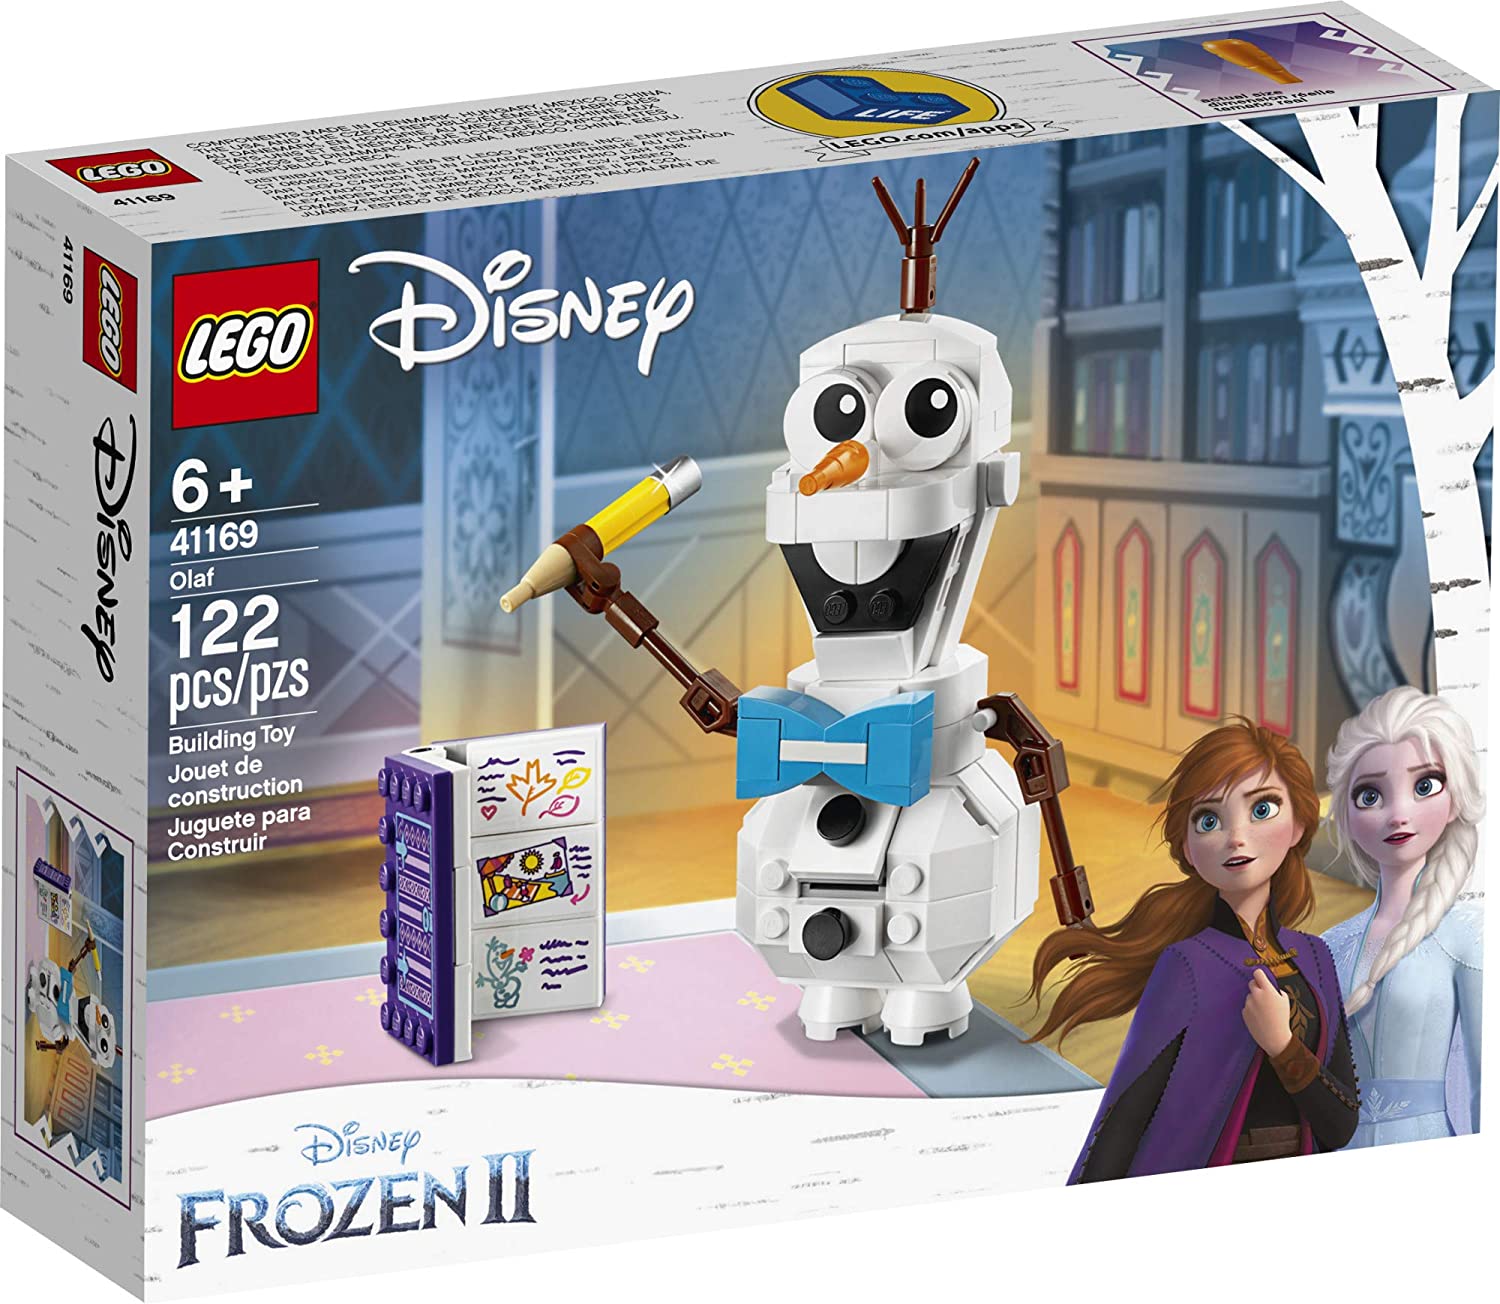  Lego Disney Frozen 2 - Olaf #41169 